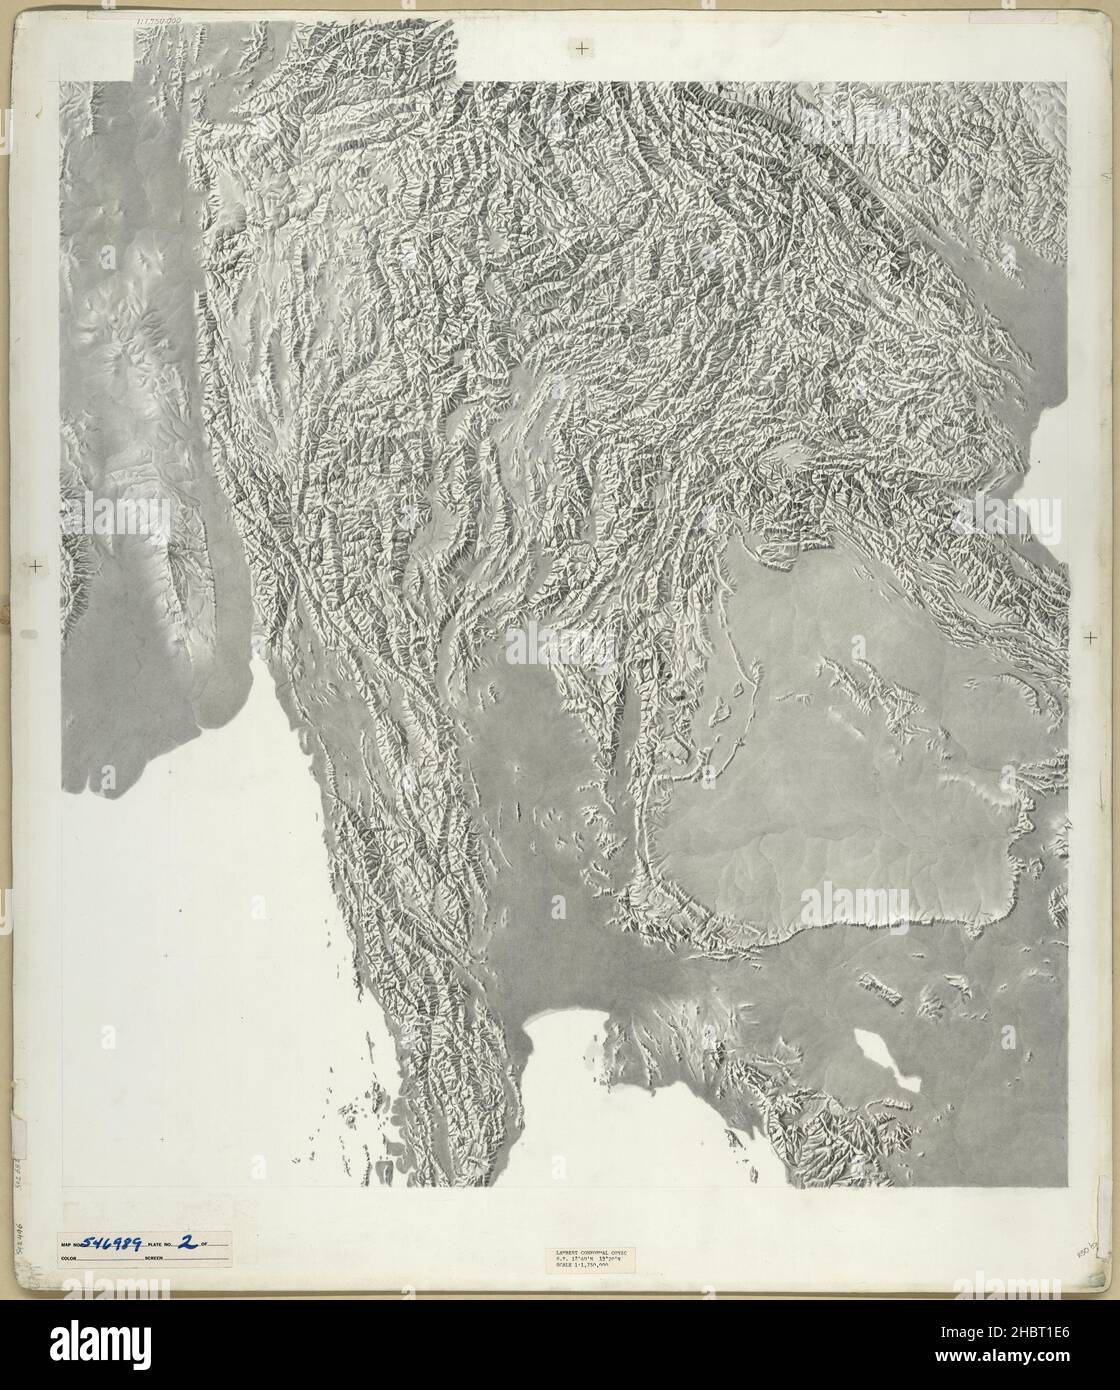 Vintage-Karten: Südost-Asien-Karte mit Schweizer Bergrücken- und Taltechniken durch die Geländespezialisten der Central Intelligence Agency. Die Grundkarten (schattiertes Relief und Tieflandfarben) wurden auf Brettern gezeichnet, die aus zwei Blättern Papier entstanden, die zu einem Aluminiumkern verschmolzen waren. Ca. 1958 Stockfoto